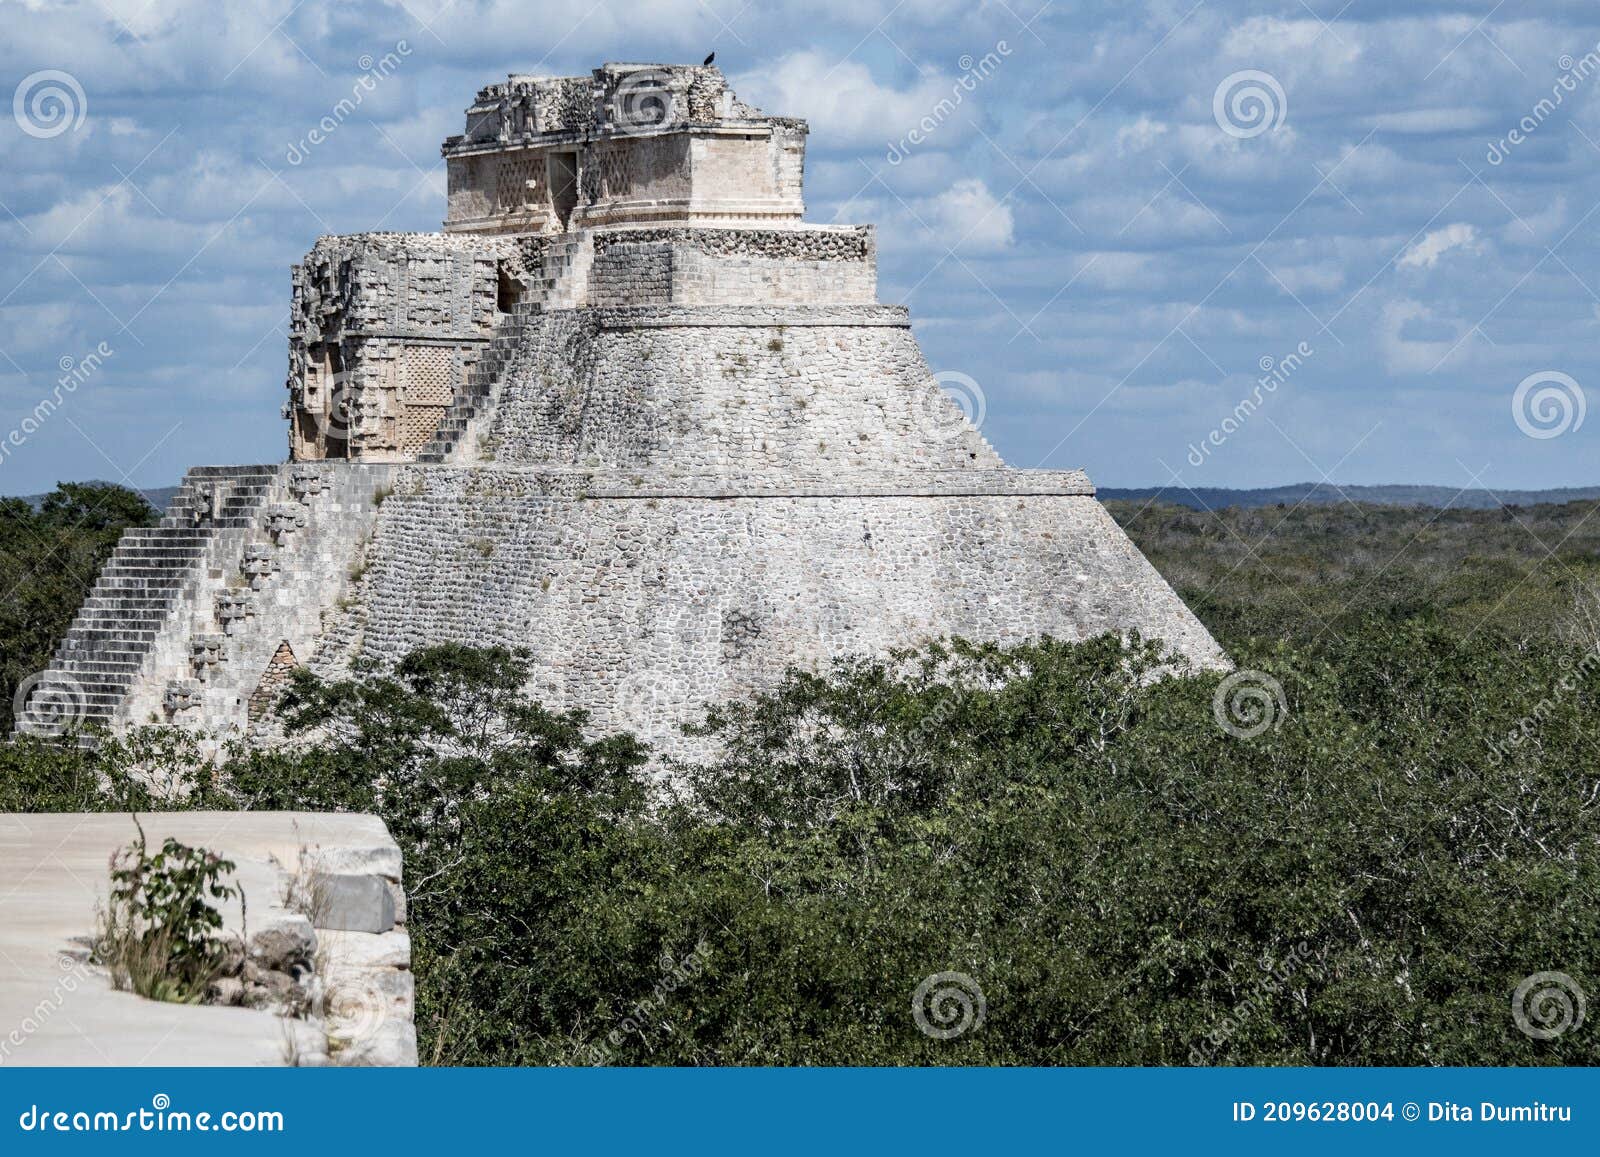 the magician`s pyramid-uxmal -mexico 156